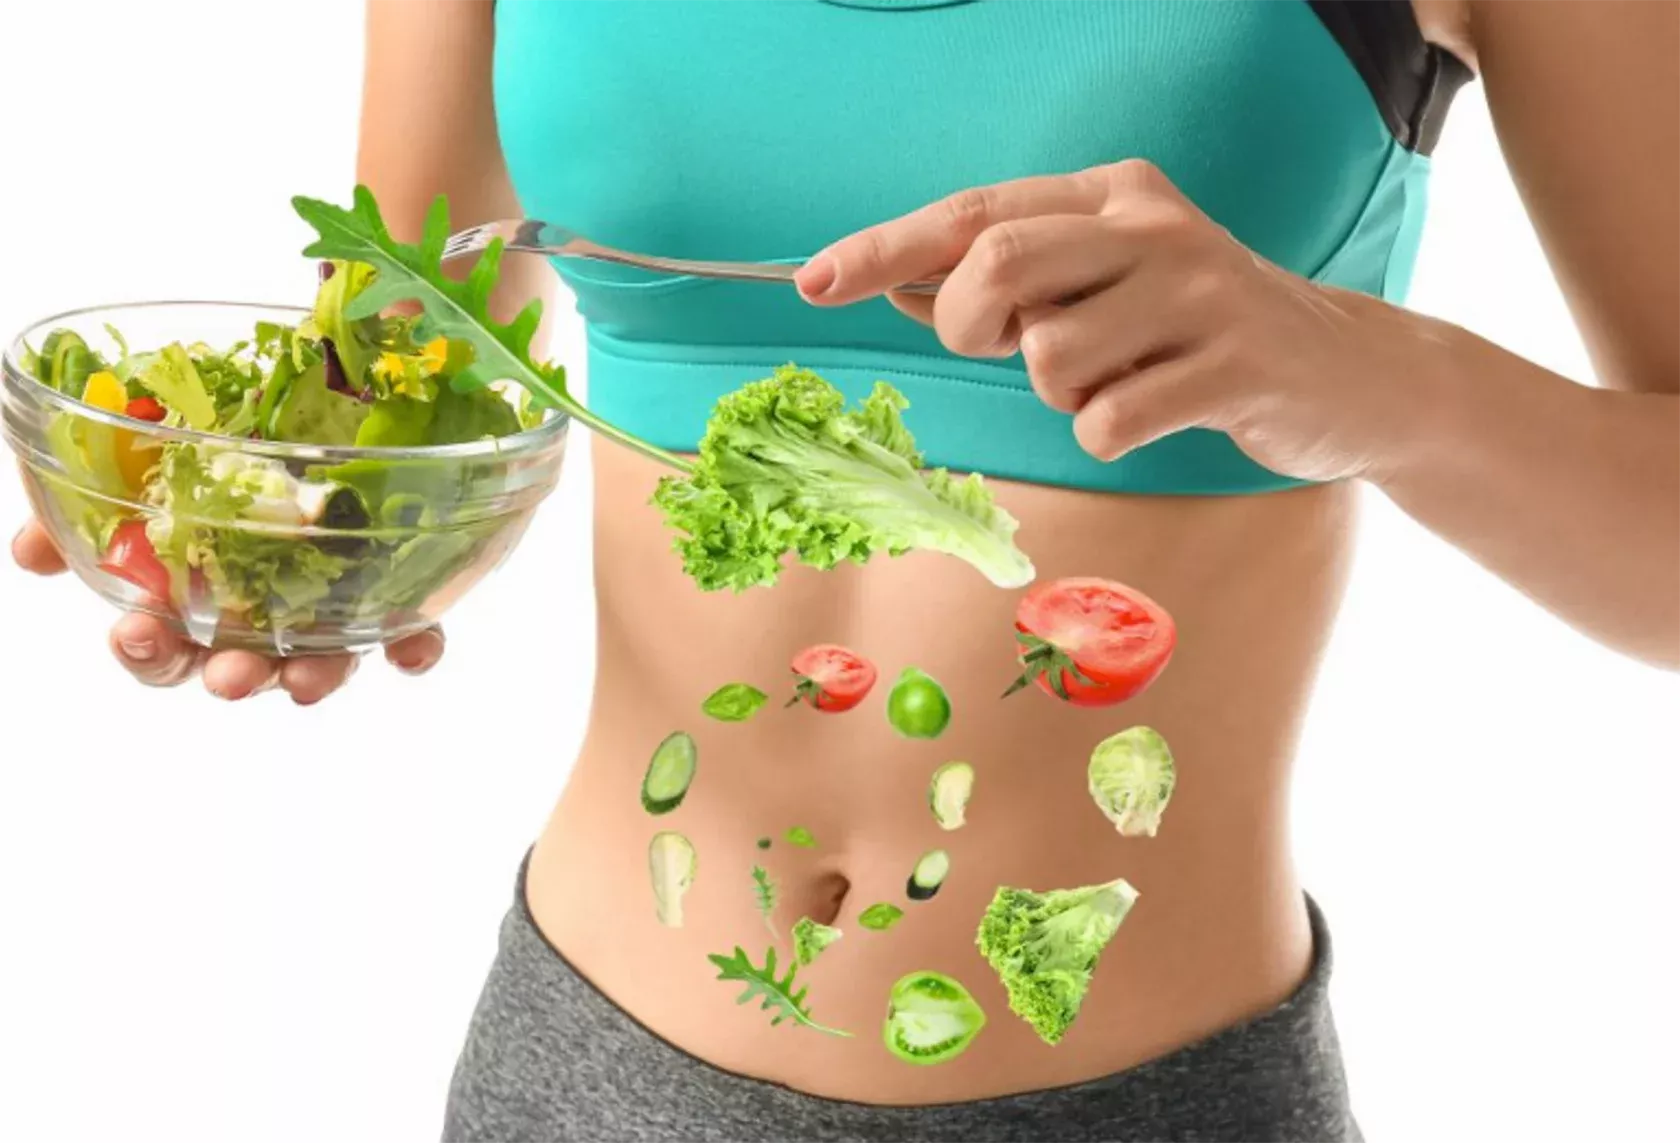 Schlanke Frau im Sport-Outfit hält eine Schüssel mit Salat vor ihren Bauch.